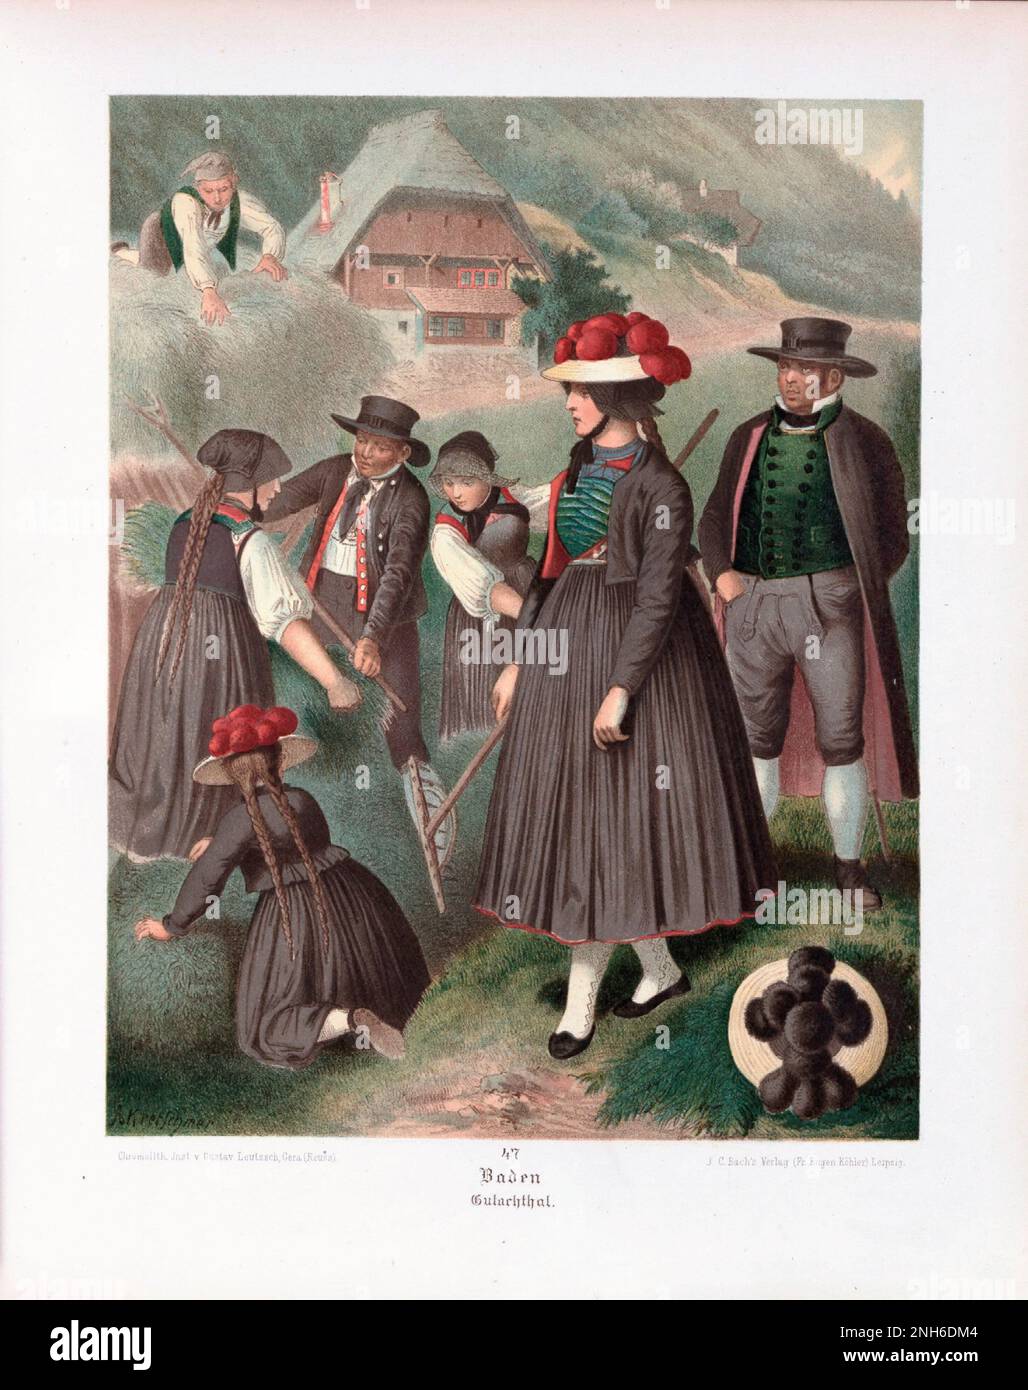 Deutsches Volkskleid. Baden, Gutachthal. Lithographie des 19. Jahrhunderts. Stockfoto